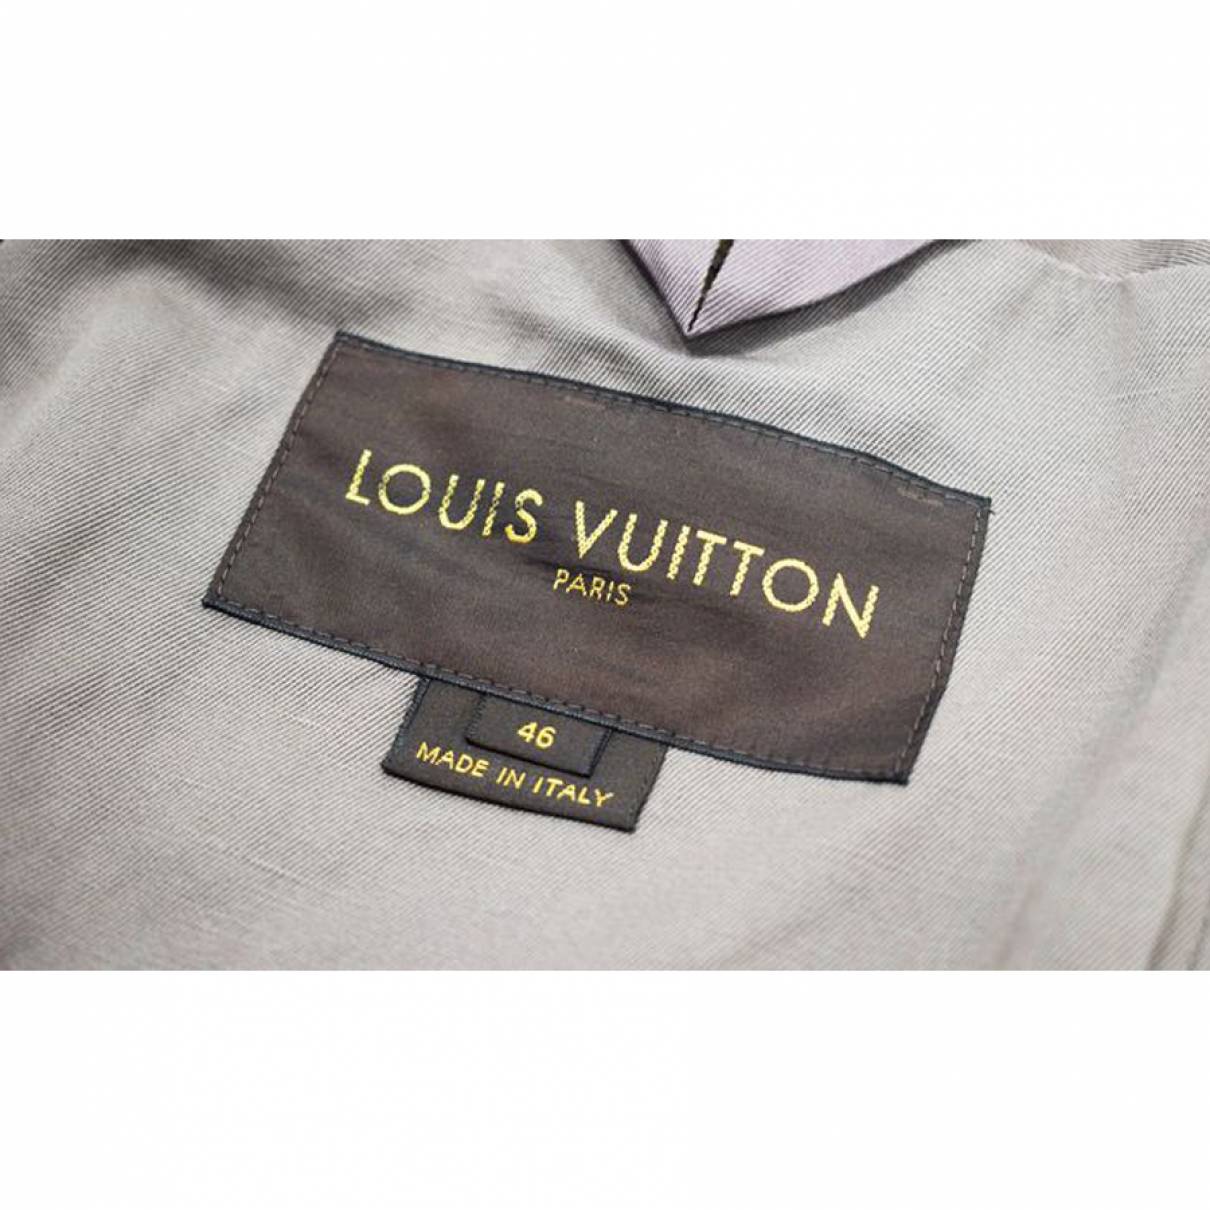 LOUIS VUITTON Paris: Small beige cotton jacket, notched …